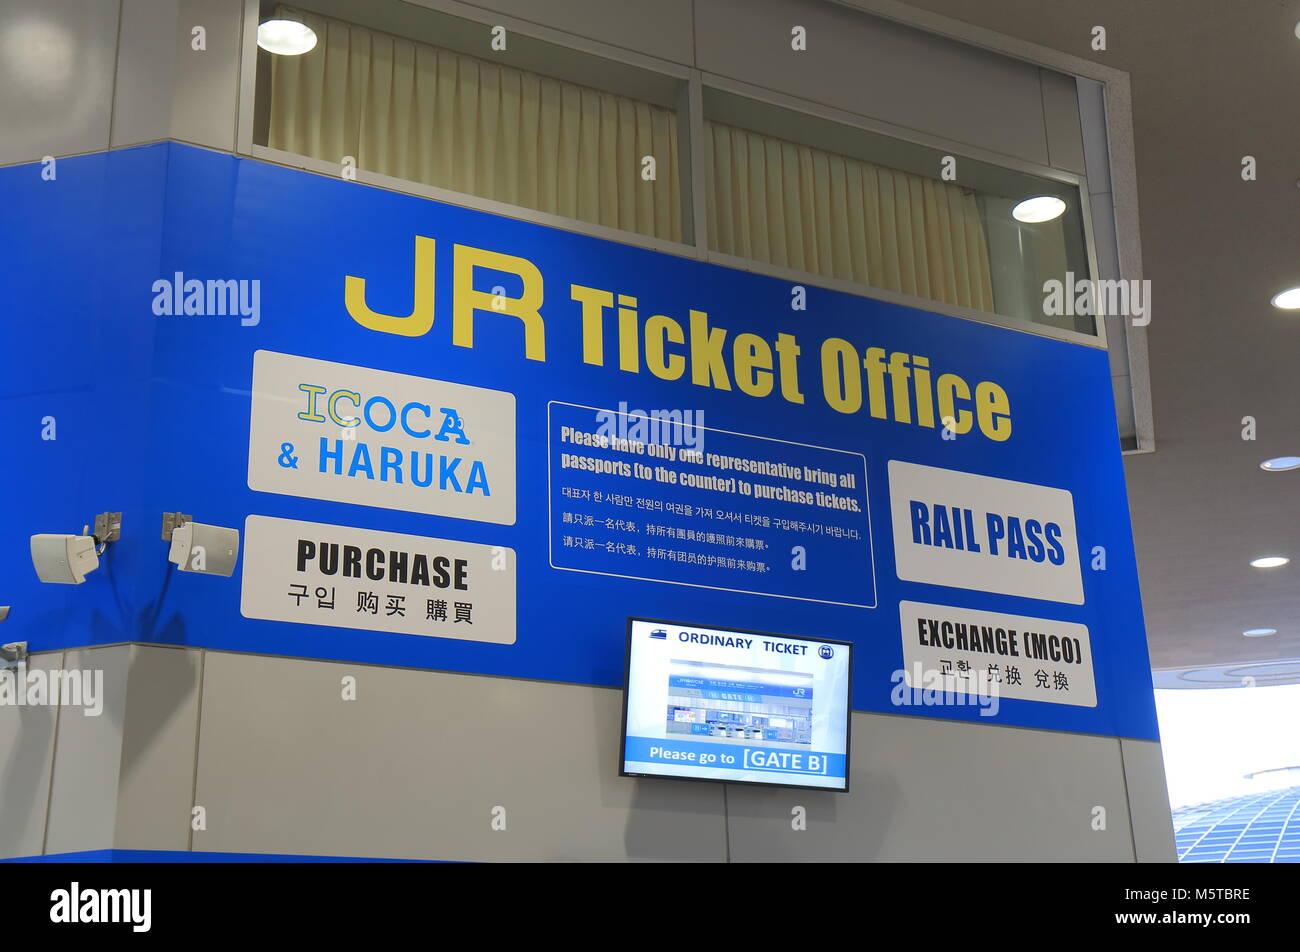 L'aeroporto internazionale di Kansai e stazione ferroviaria JR biglietteria di Osaka in Giappone Foto Stock